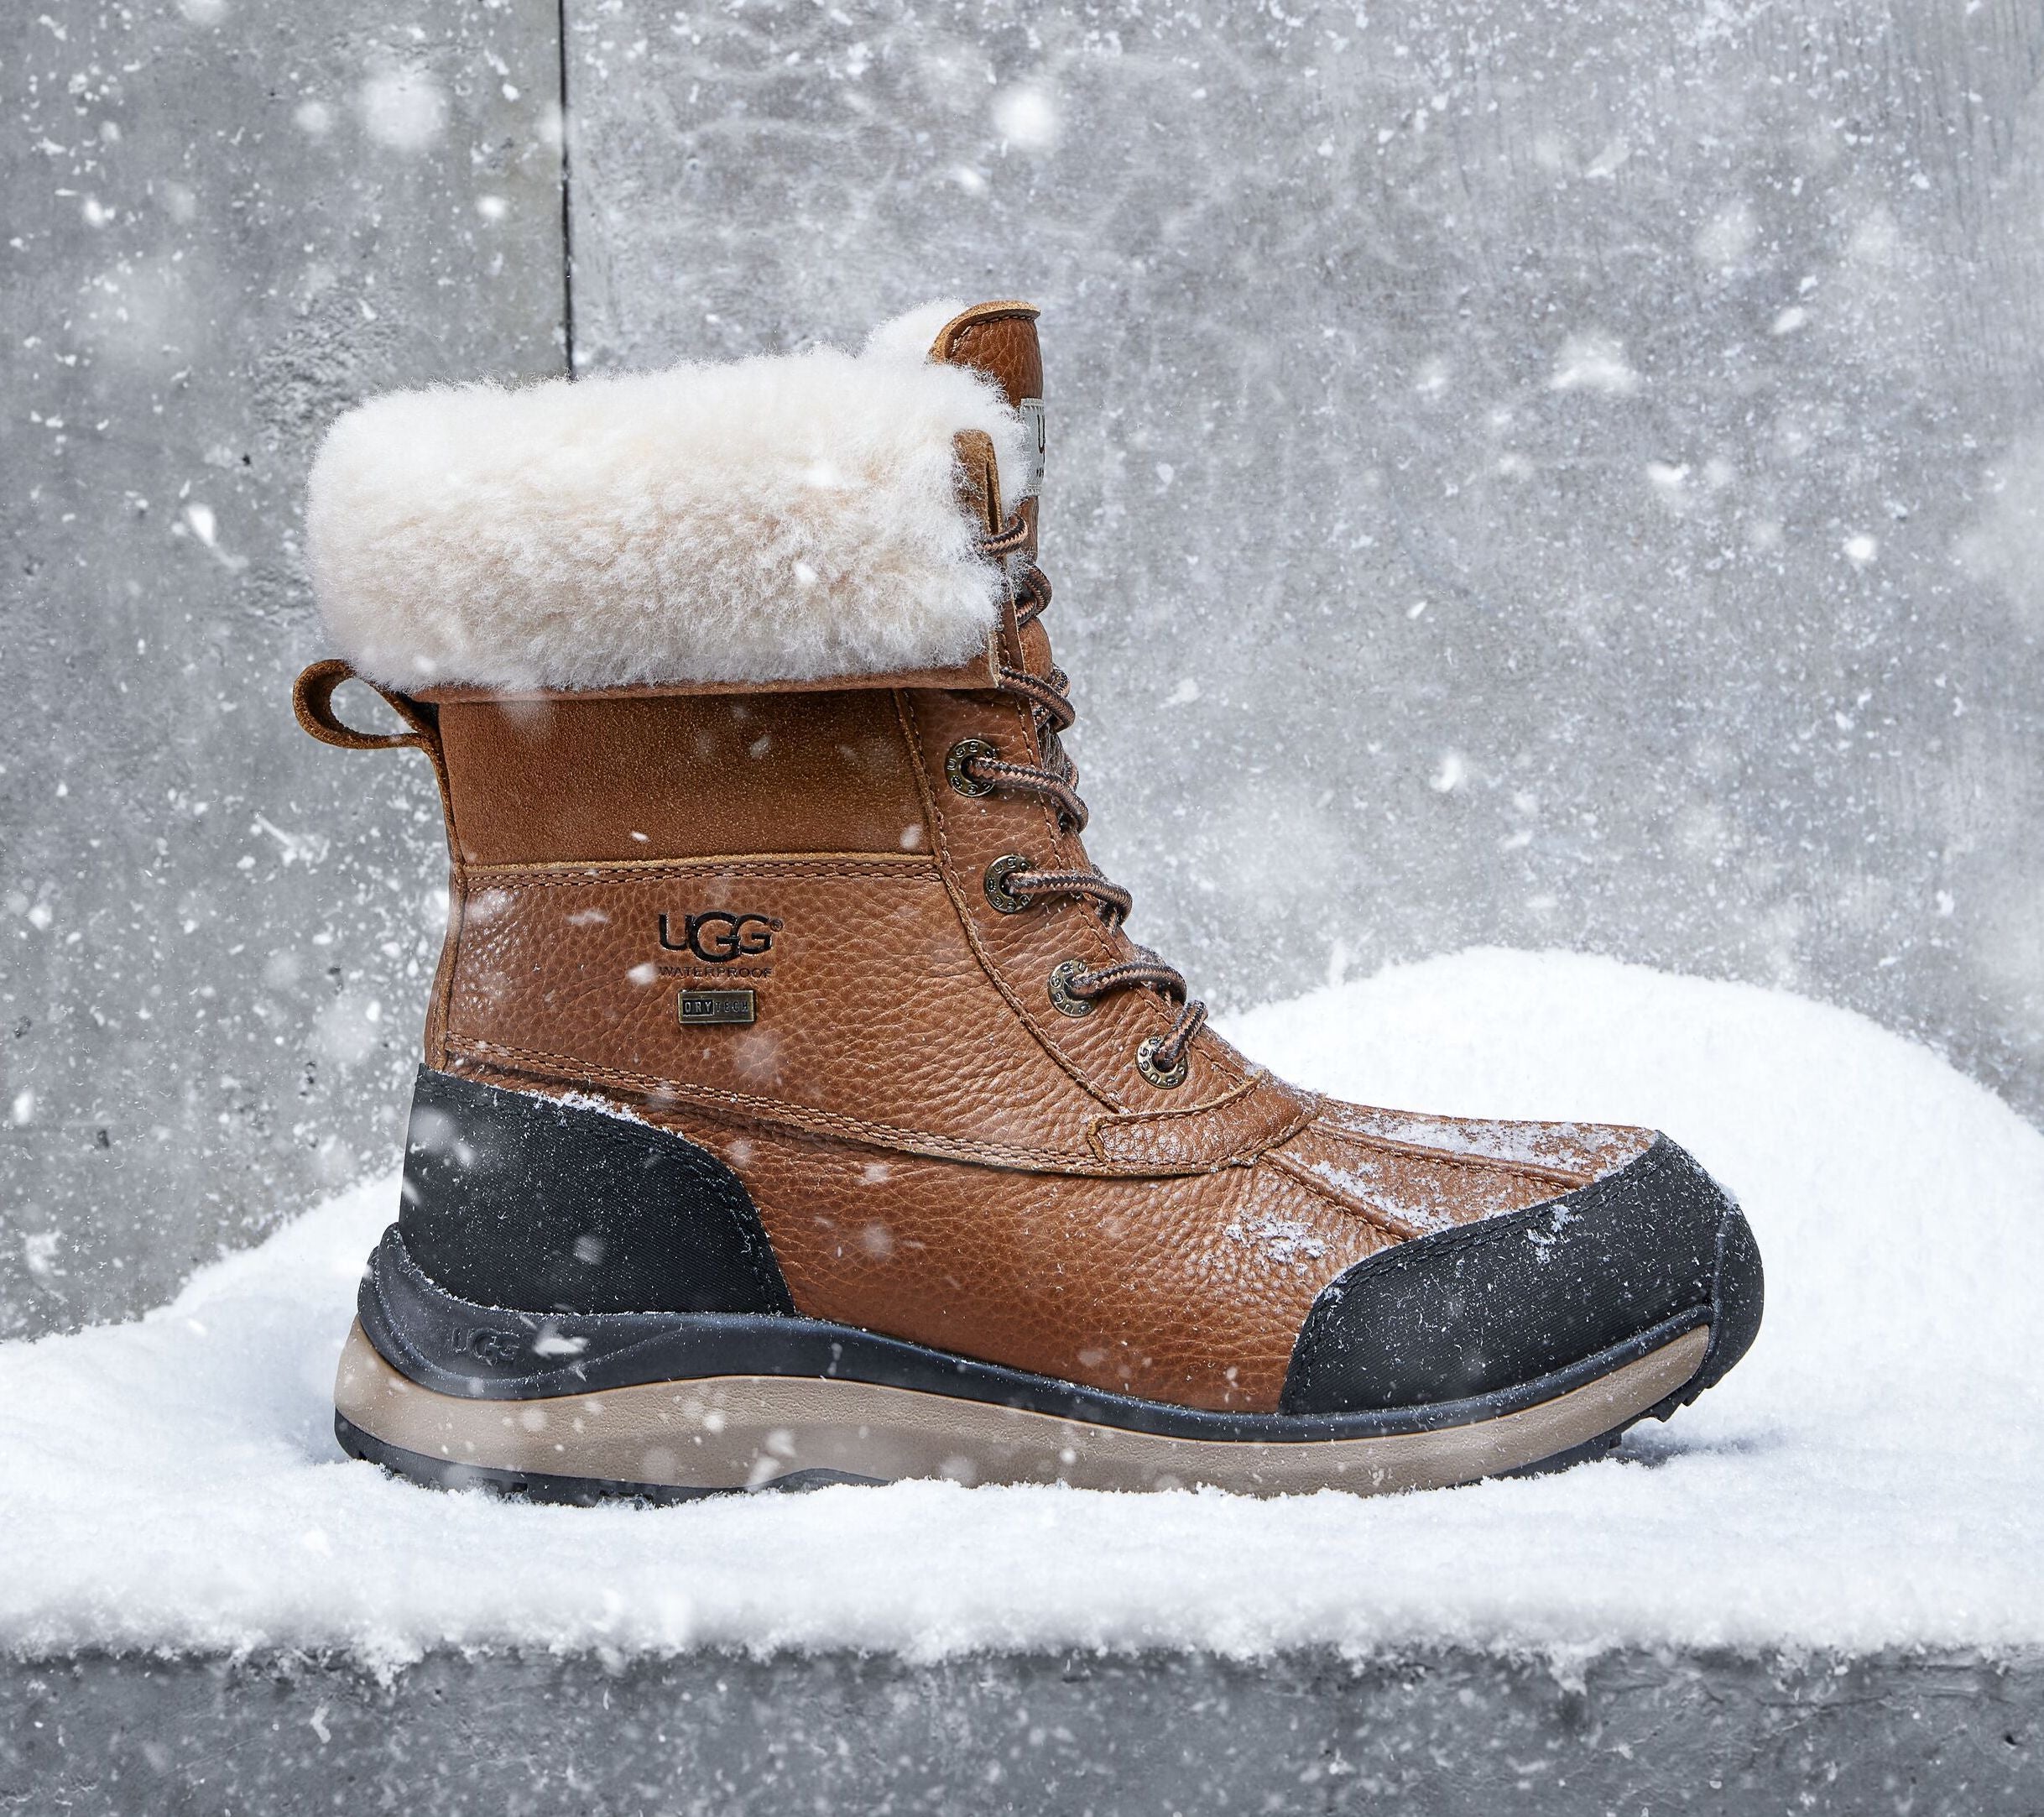 Buy Women's Boots Online Canada – heel boy